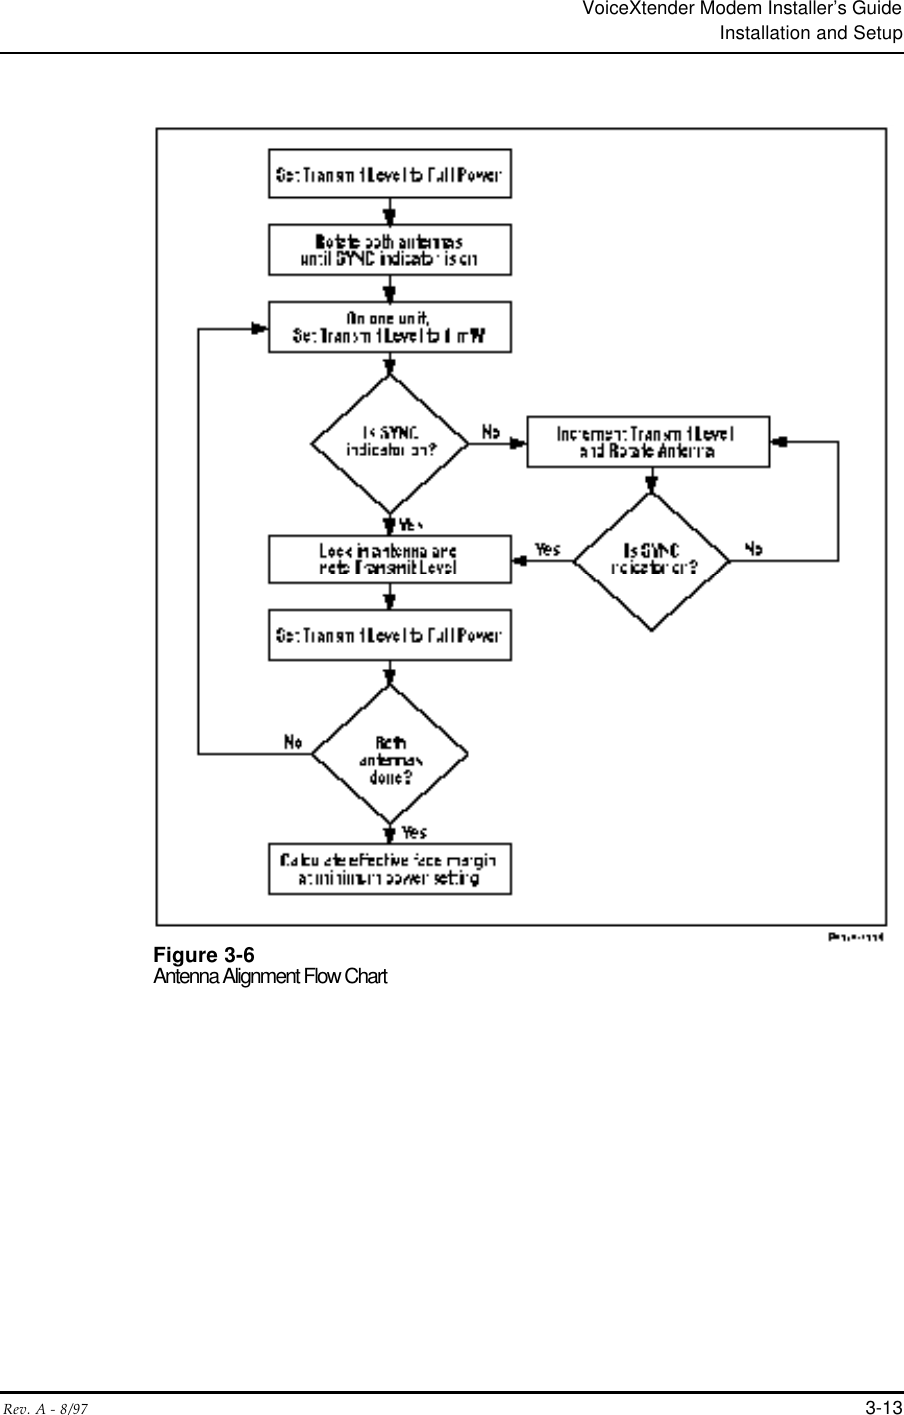 VoiceXtender Modem Installer’s GuideInstallation and SetupRev. A - 8/97 3-13Figure 3-6Antenna Alignment Flow Chart